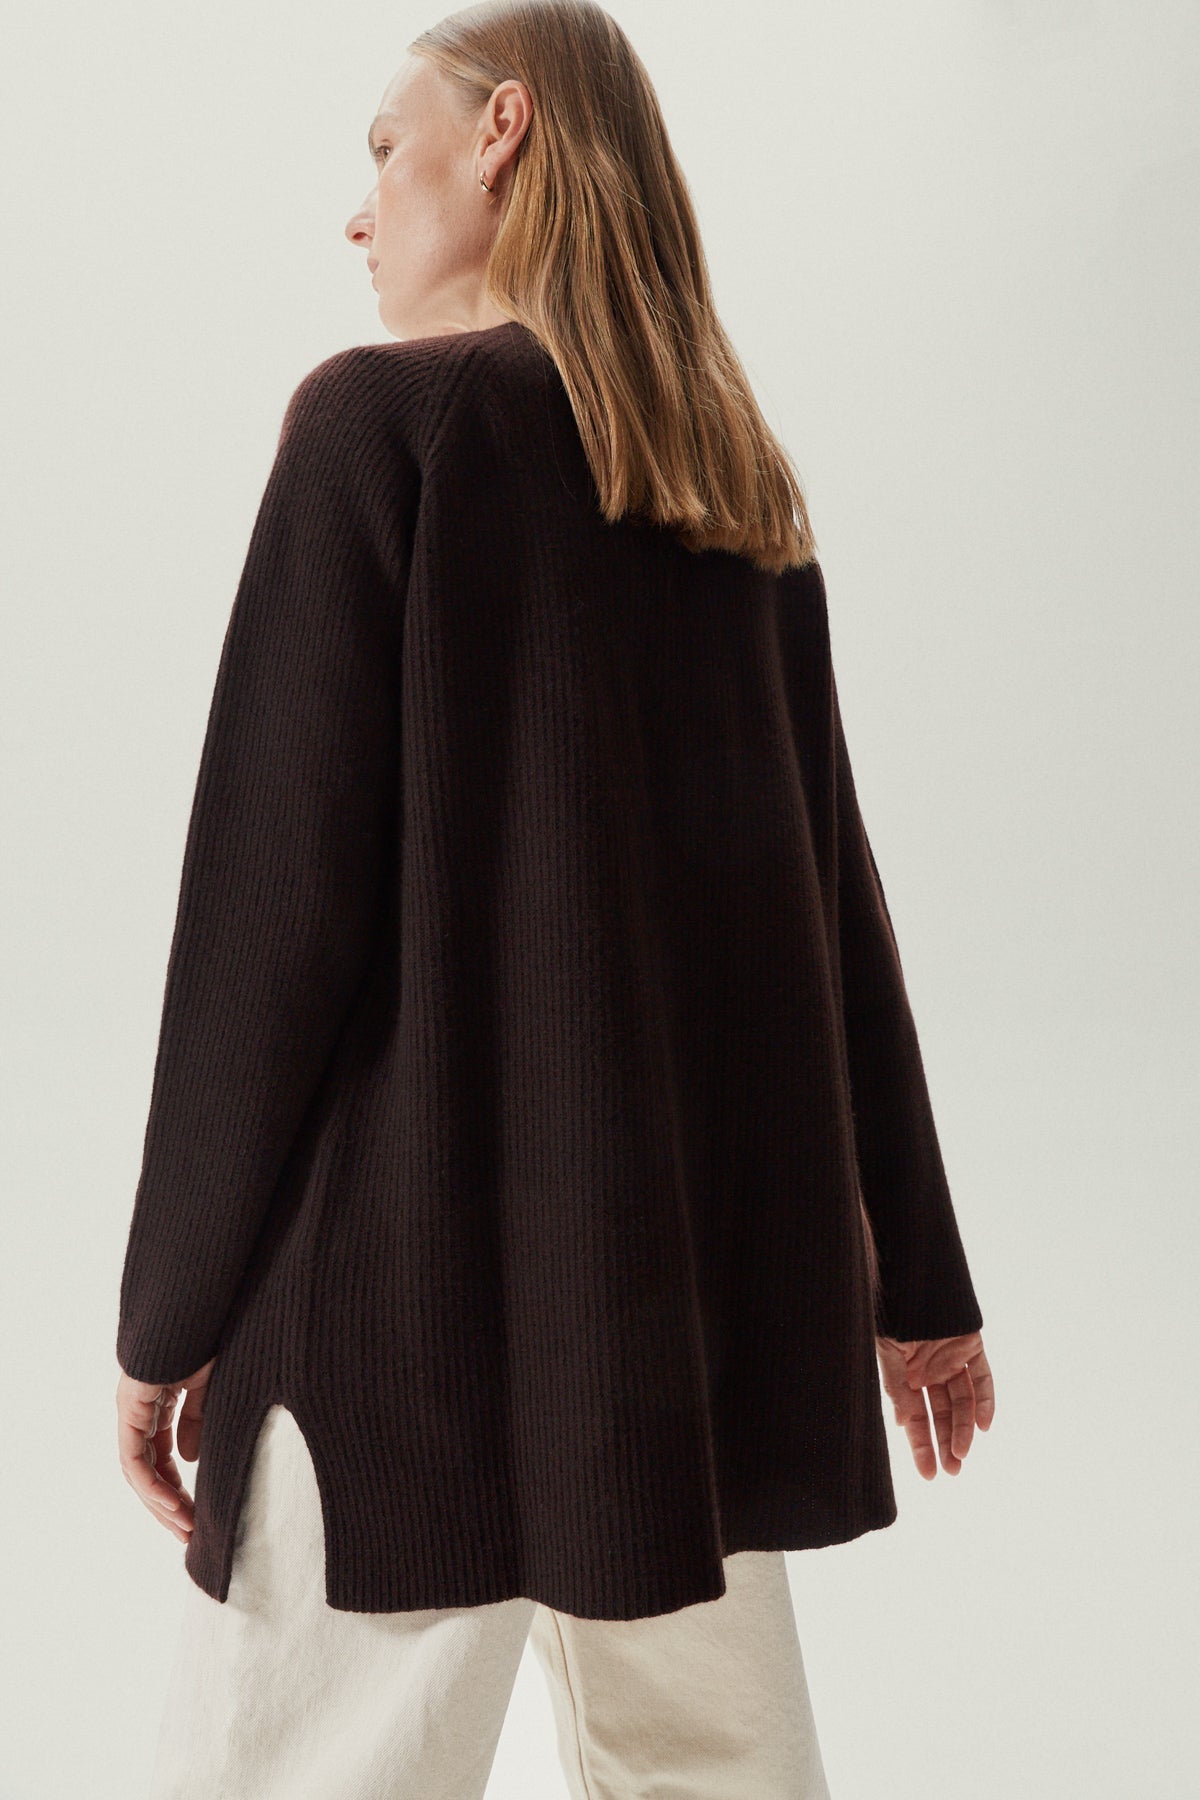 the woolen oversize cardigan deep brown